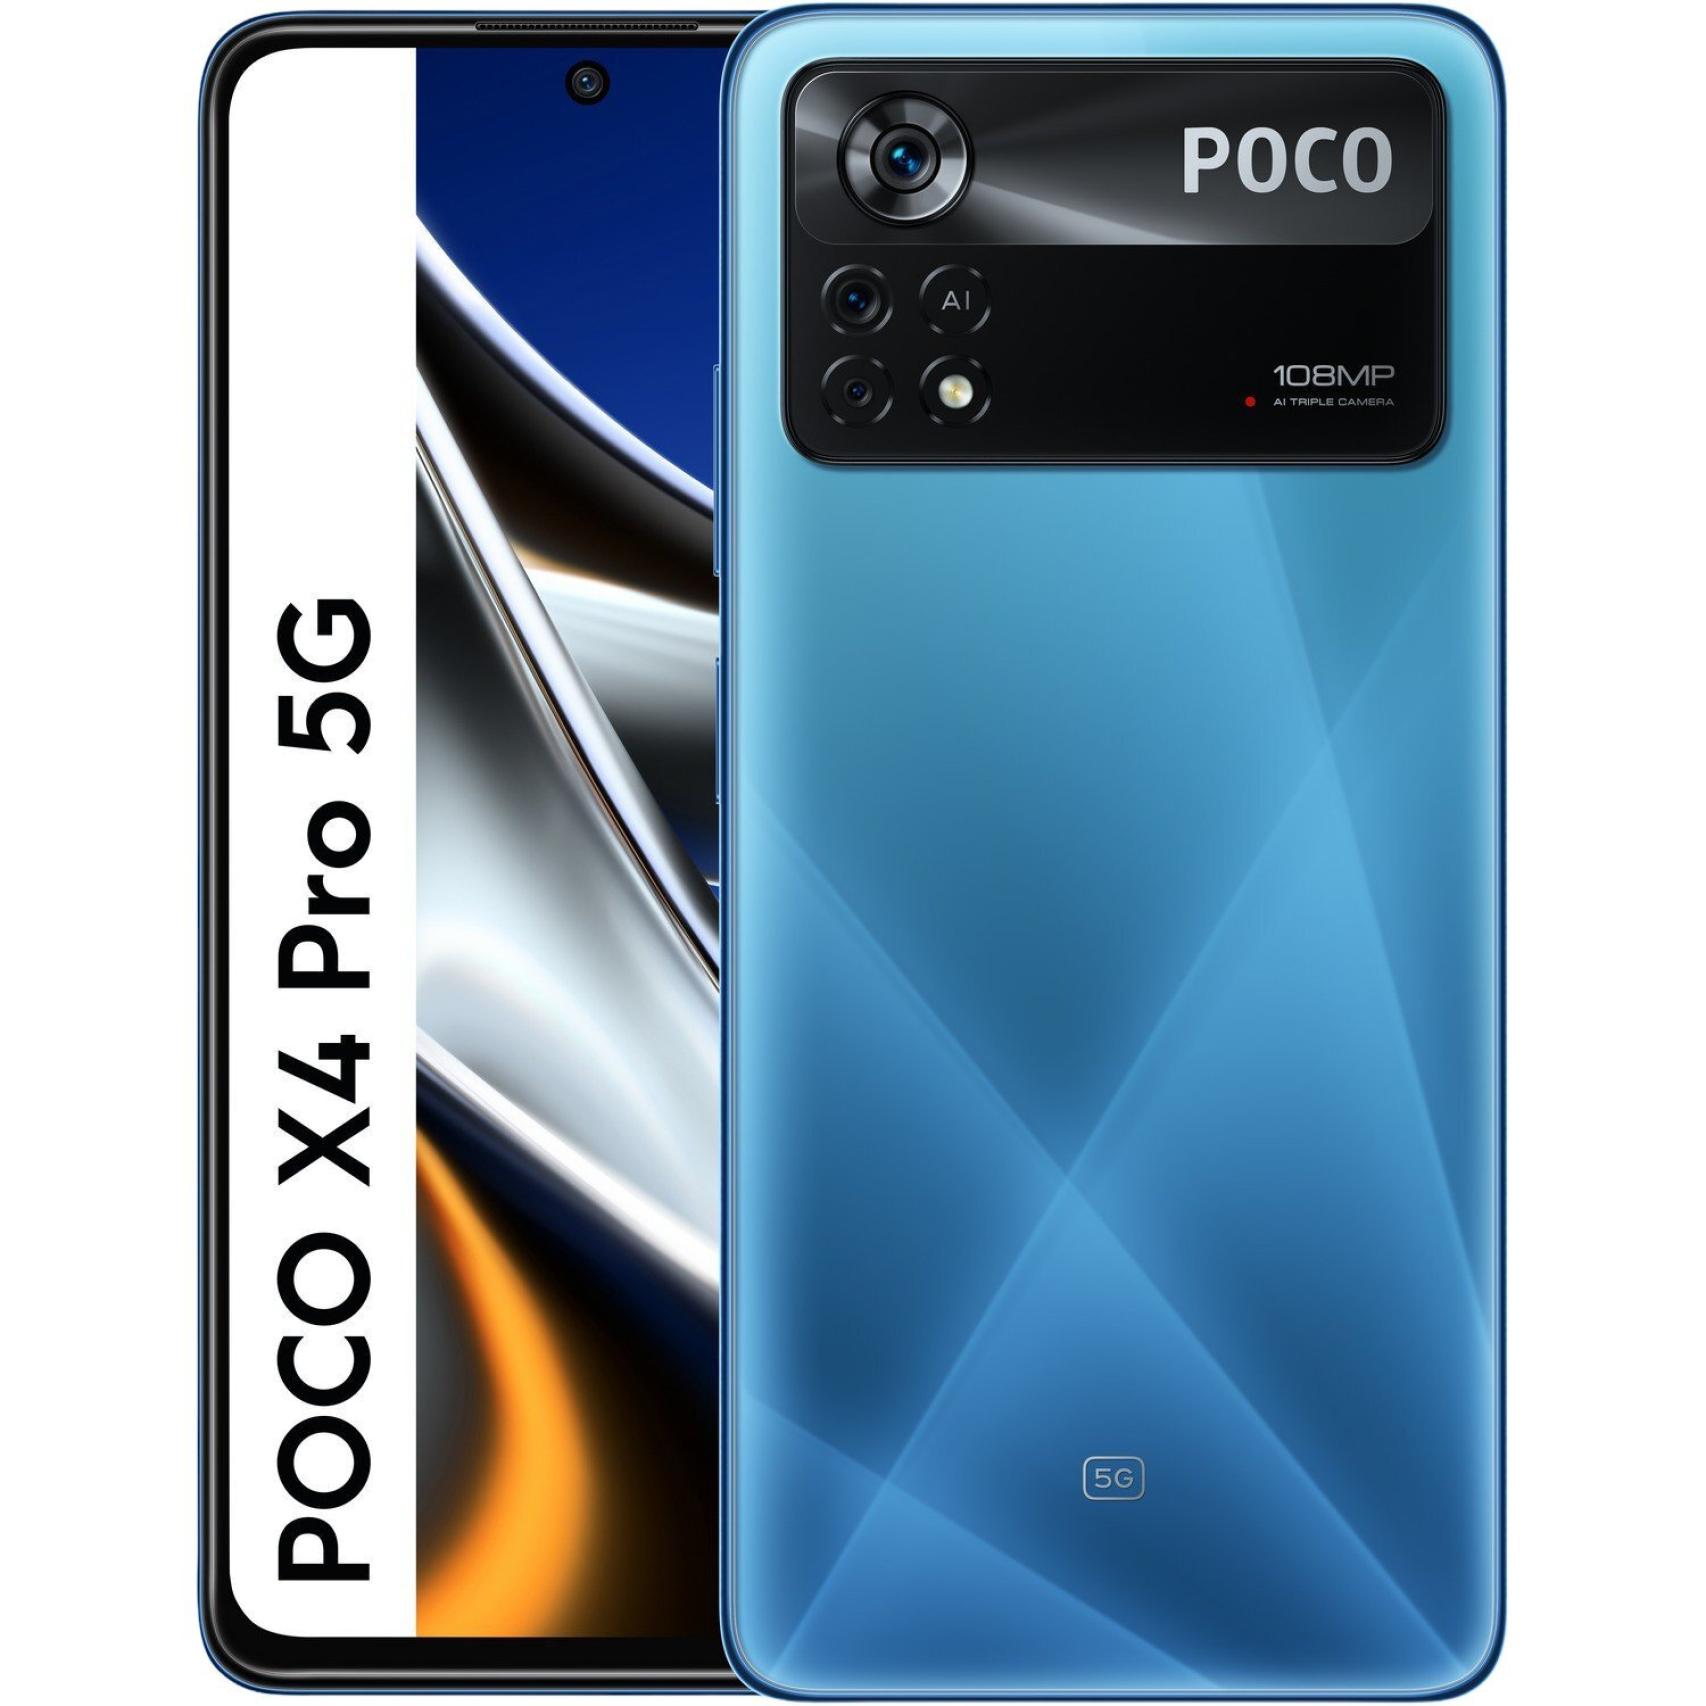 POCO X4 Pro 5G: precio, fecha de lanzamiento y características que